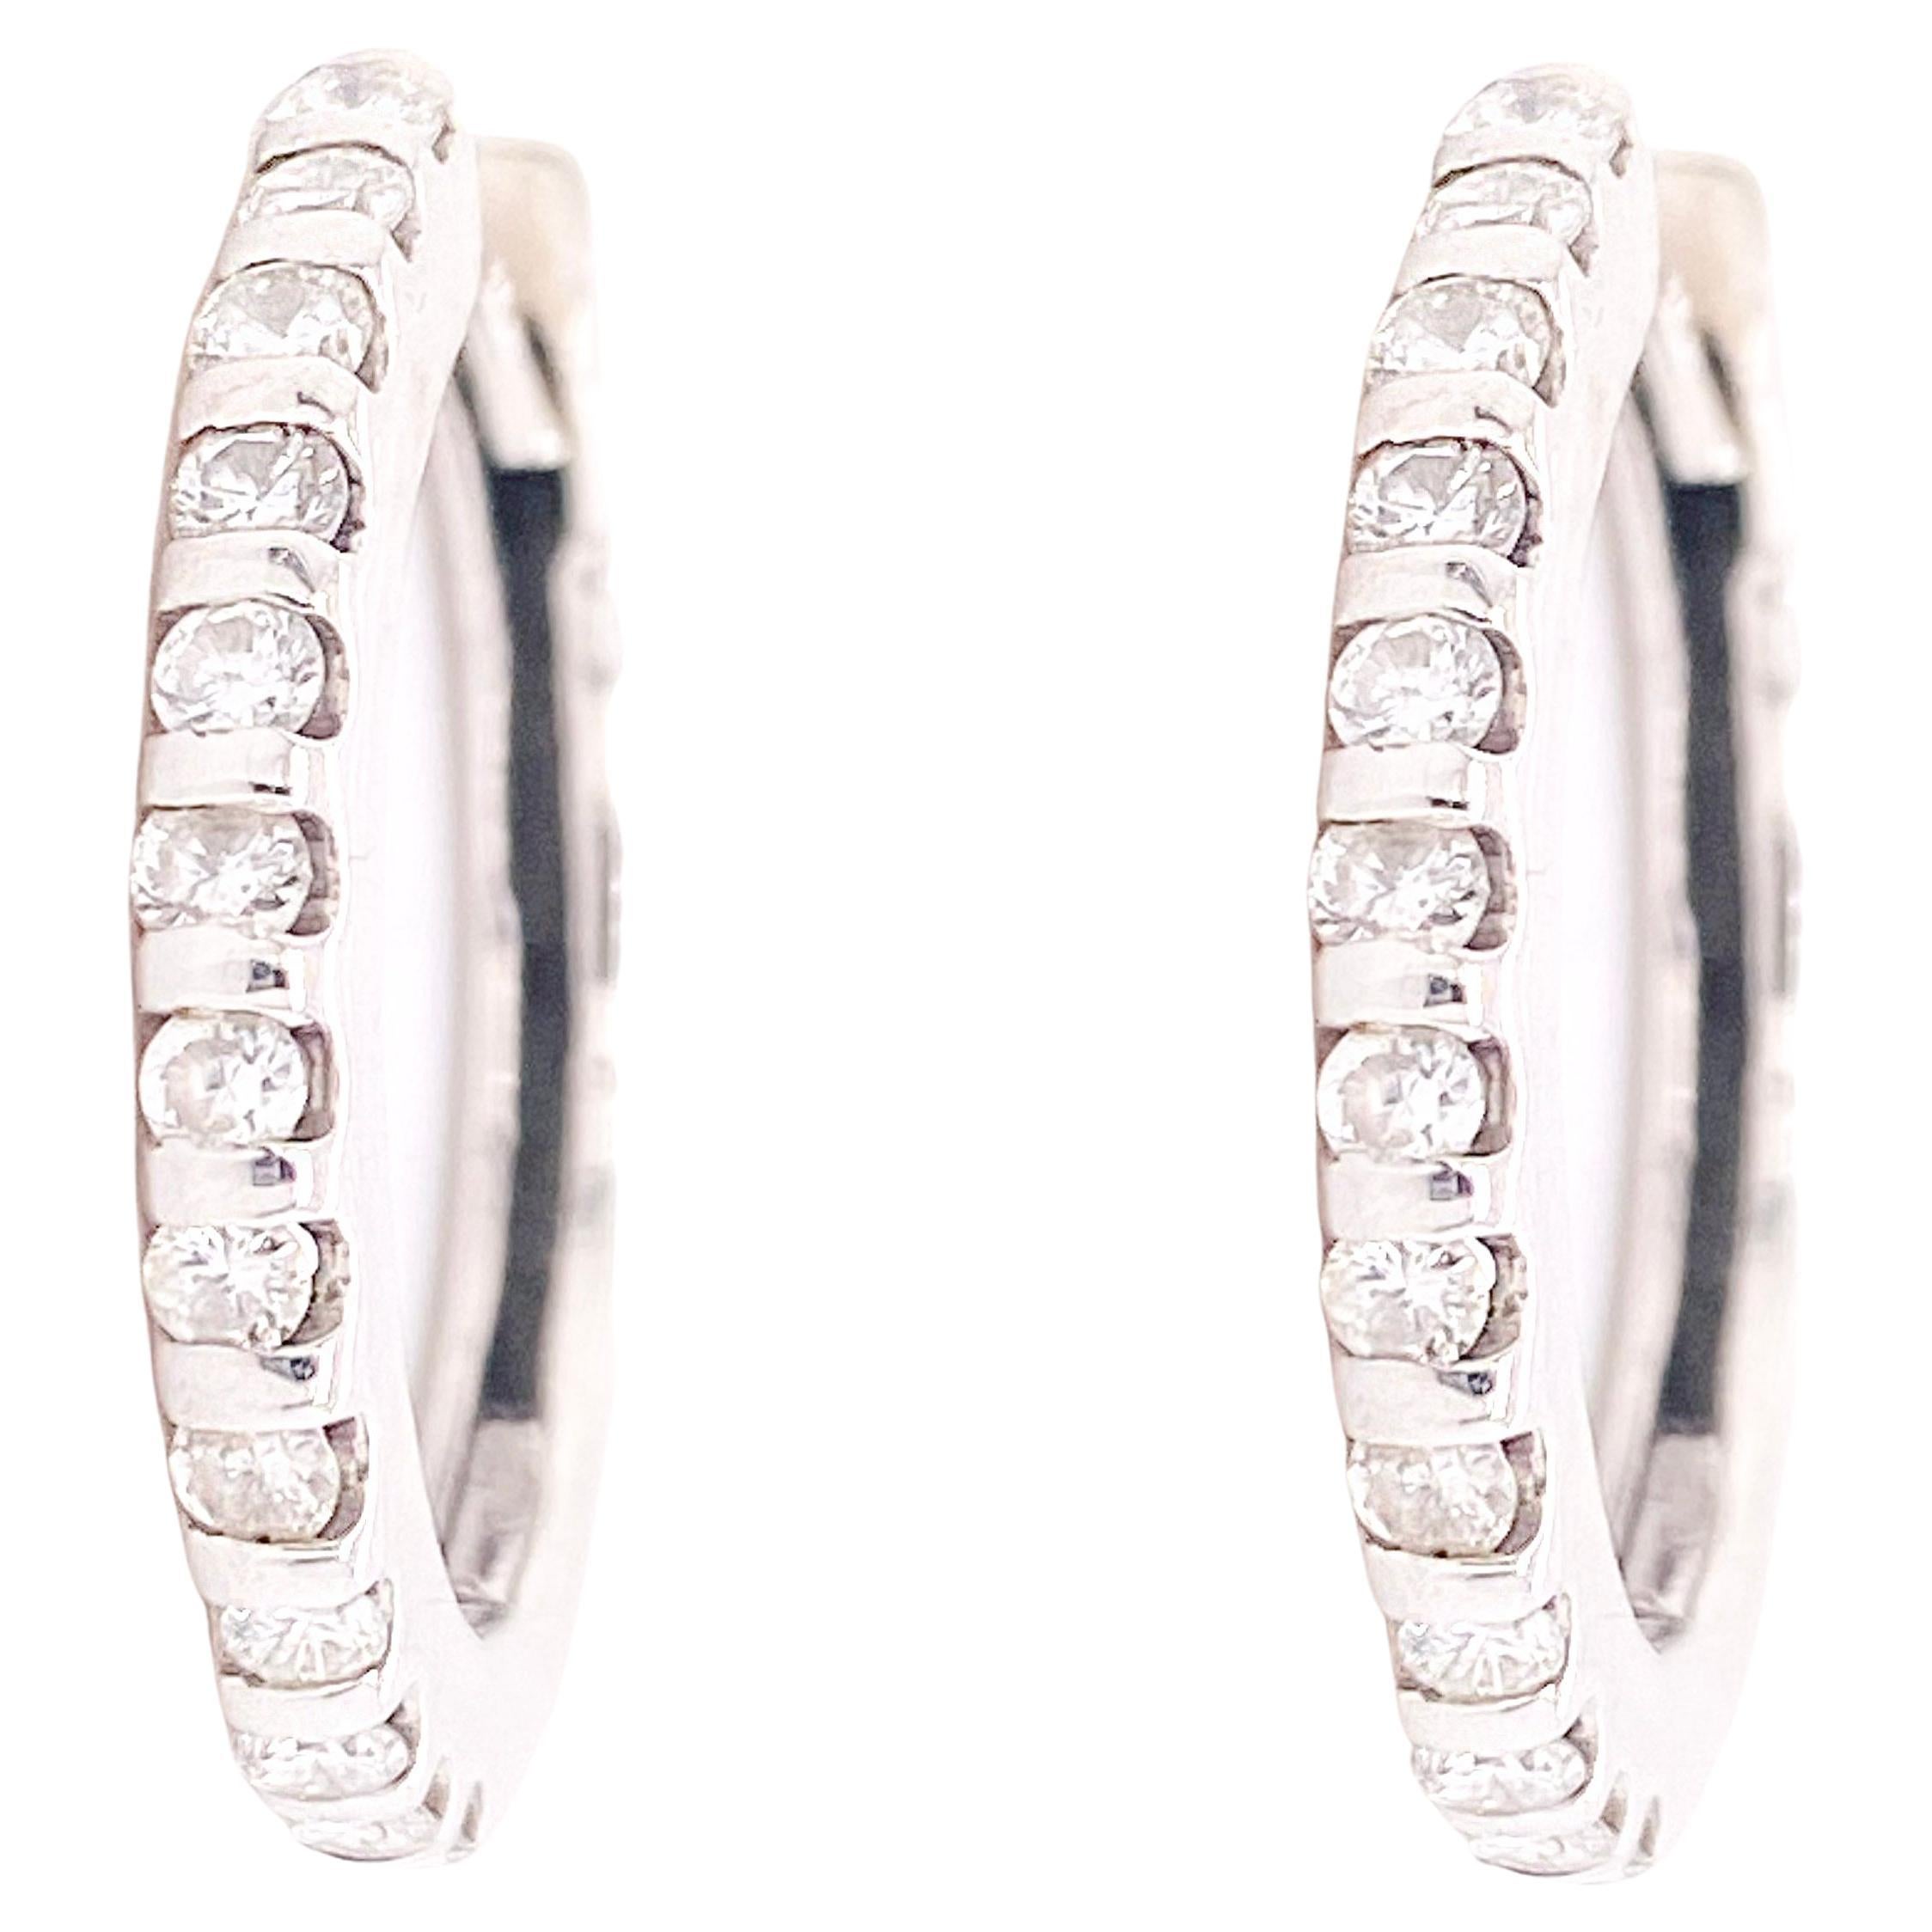 Créoles contemporaines à charnières en diamants blancs avec 24 diamants pleine taille